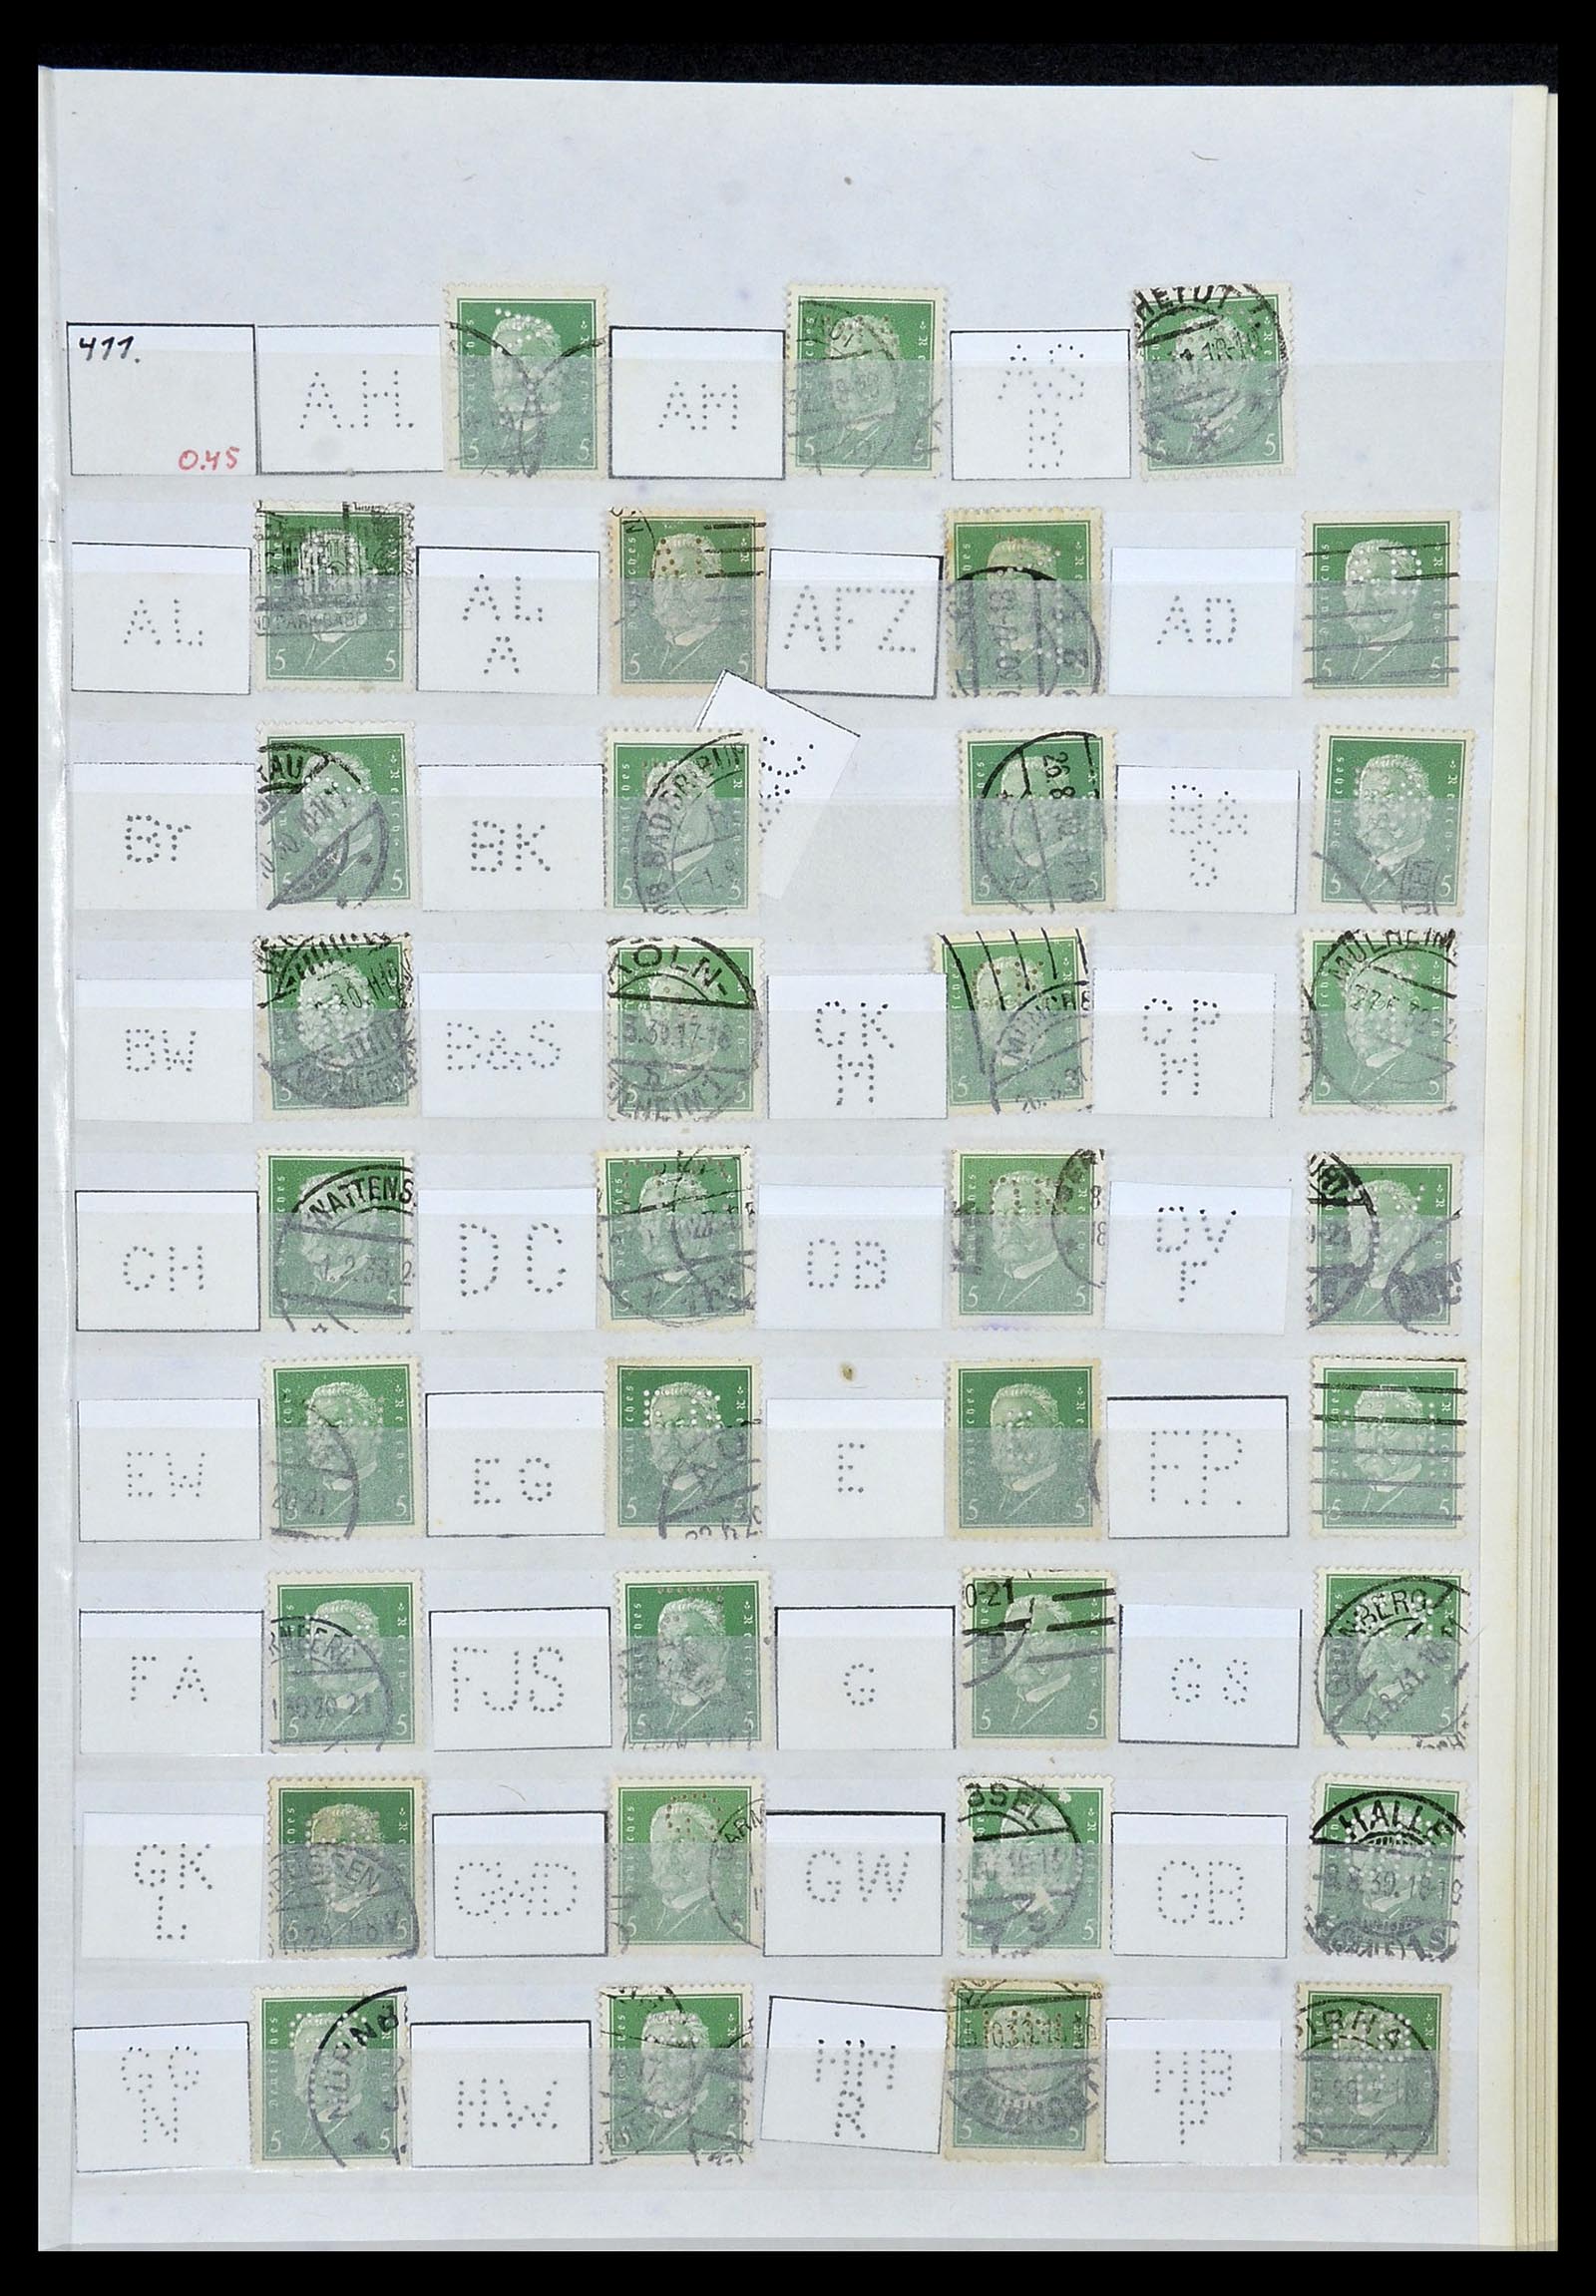 34071 021 - Stamp collection 34071 German Reich perfins 1923-1930.